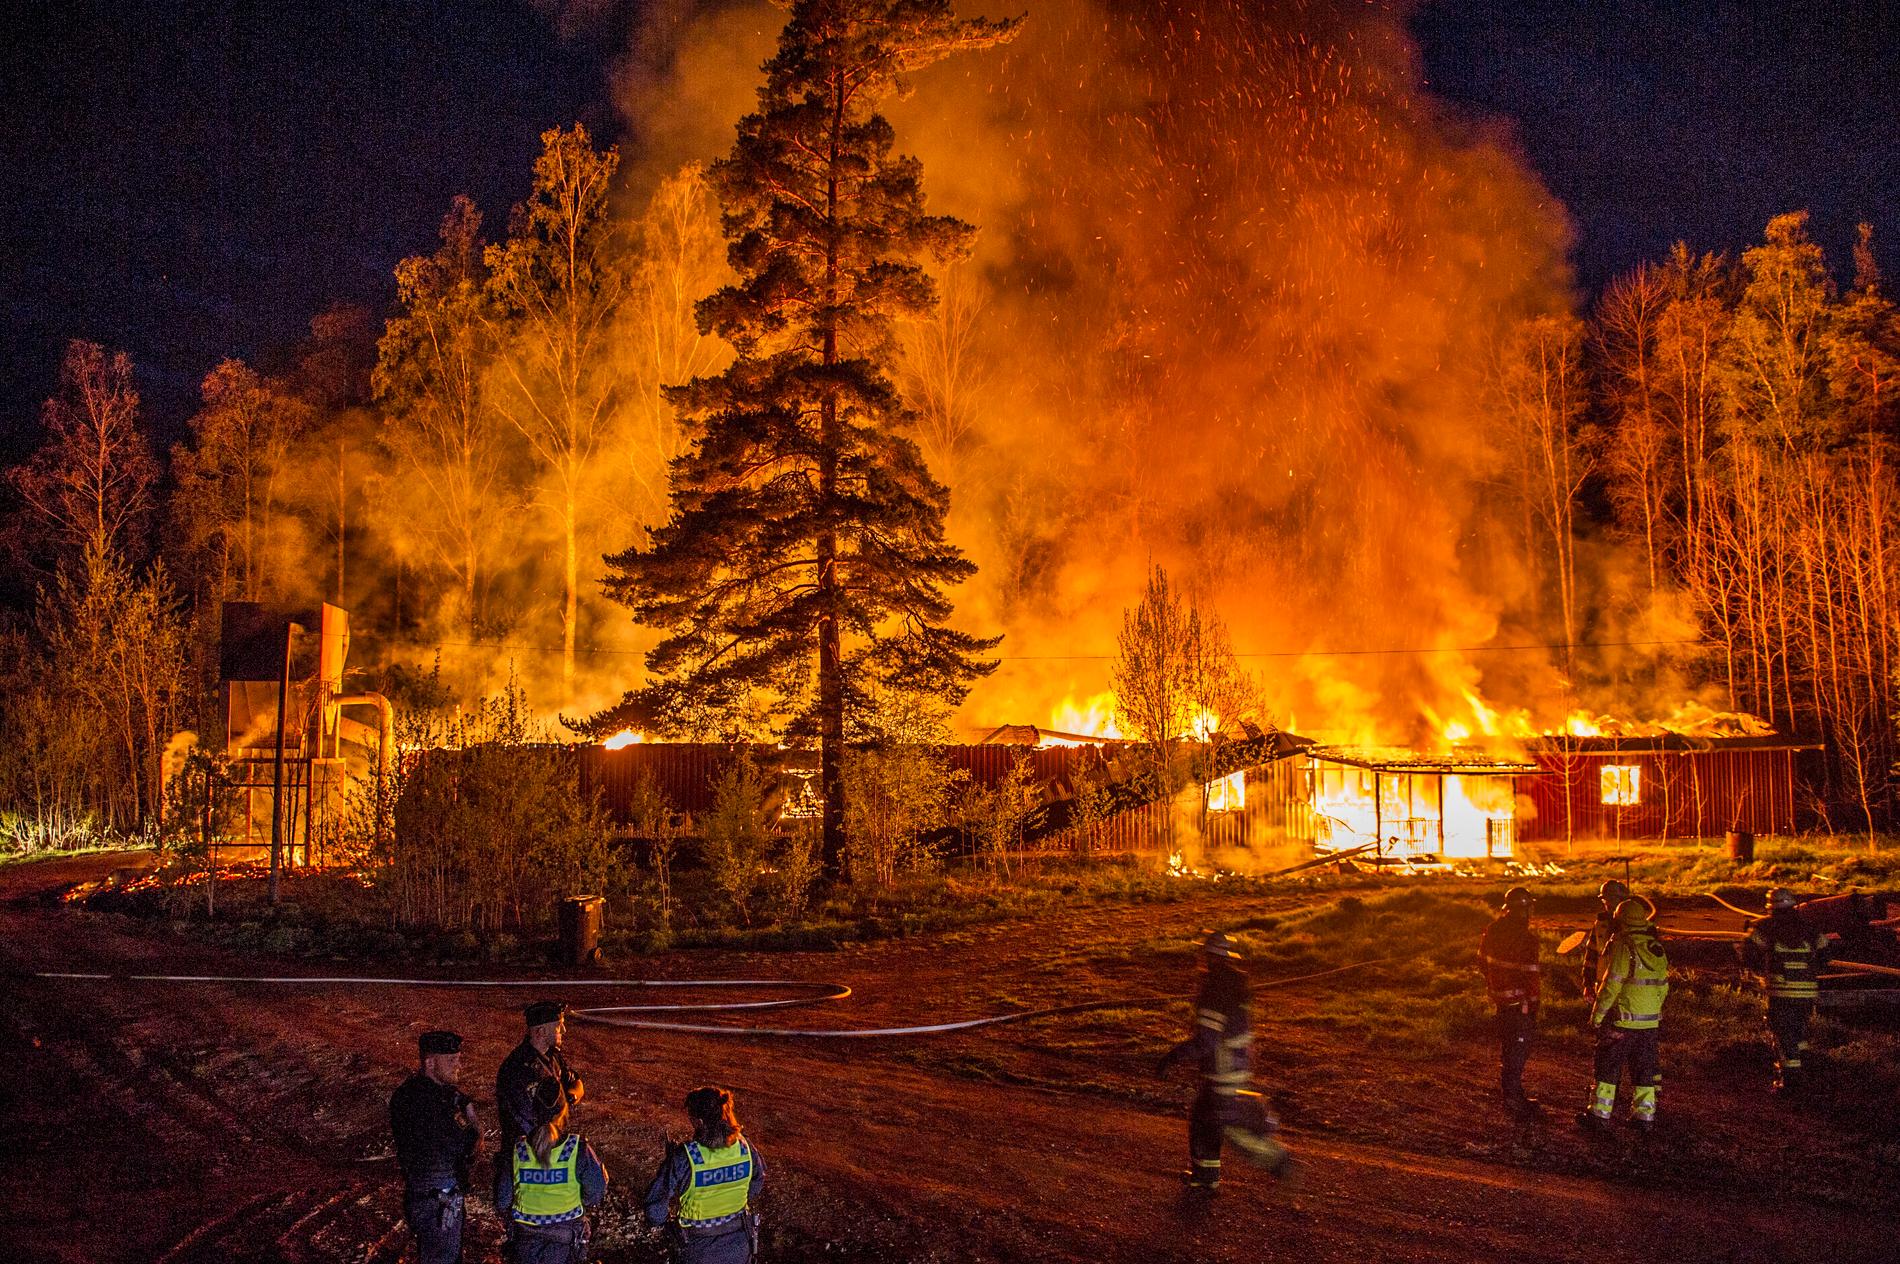 En träindustri strax utanför Garpenberg började brinna under natten mot tisdagen.